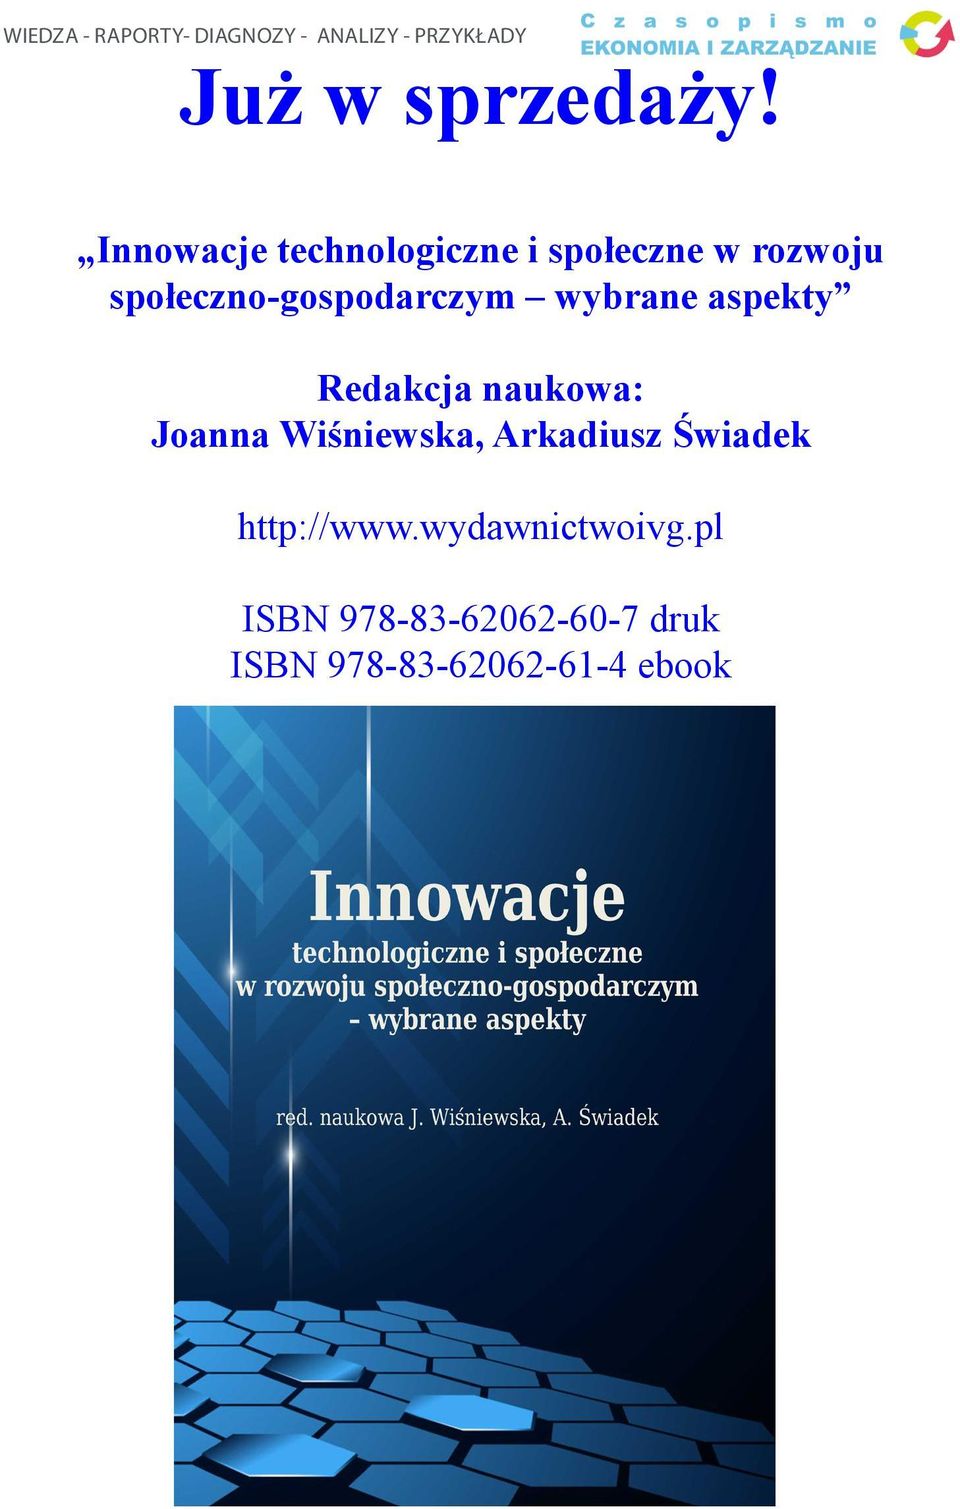 wybrane aspekty Redakcja naukowa: Joanna Wiśniewska, Arkadiusz Świadek